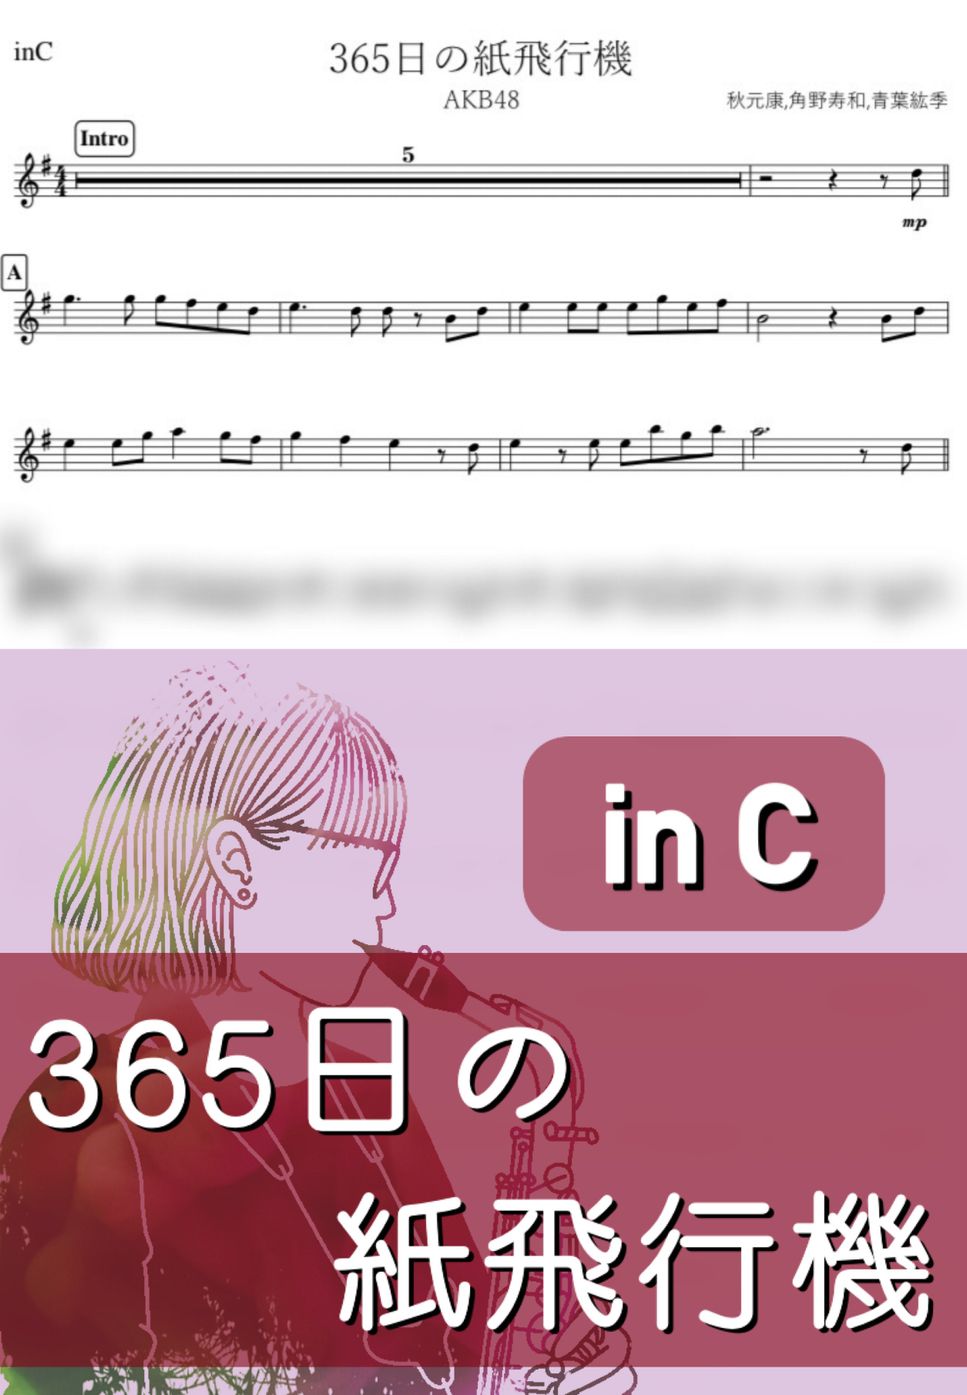 AKB48 - 365日の紙飛行機 (C) by kanamusic